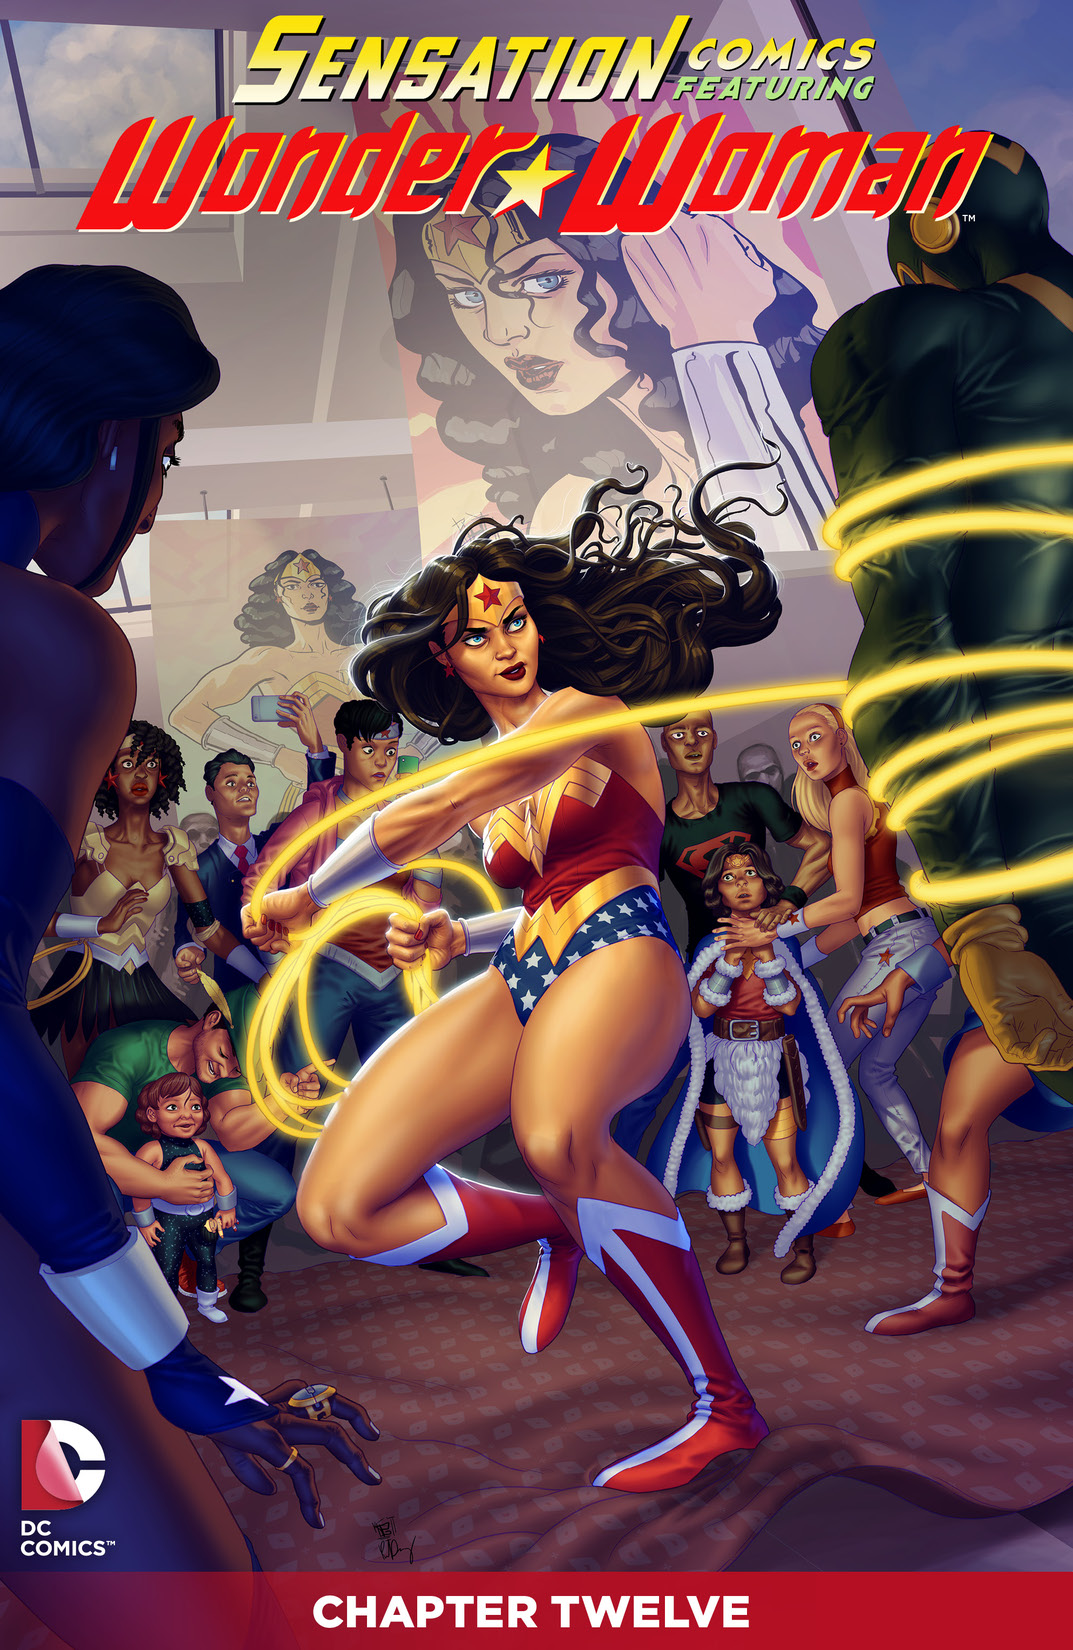 Sensation Comics Featuring Wonder Woman #12 preview images